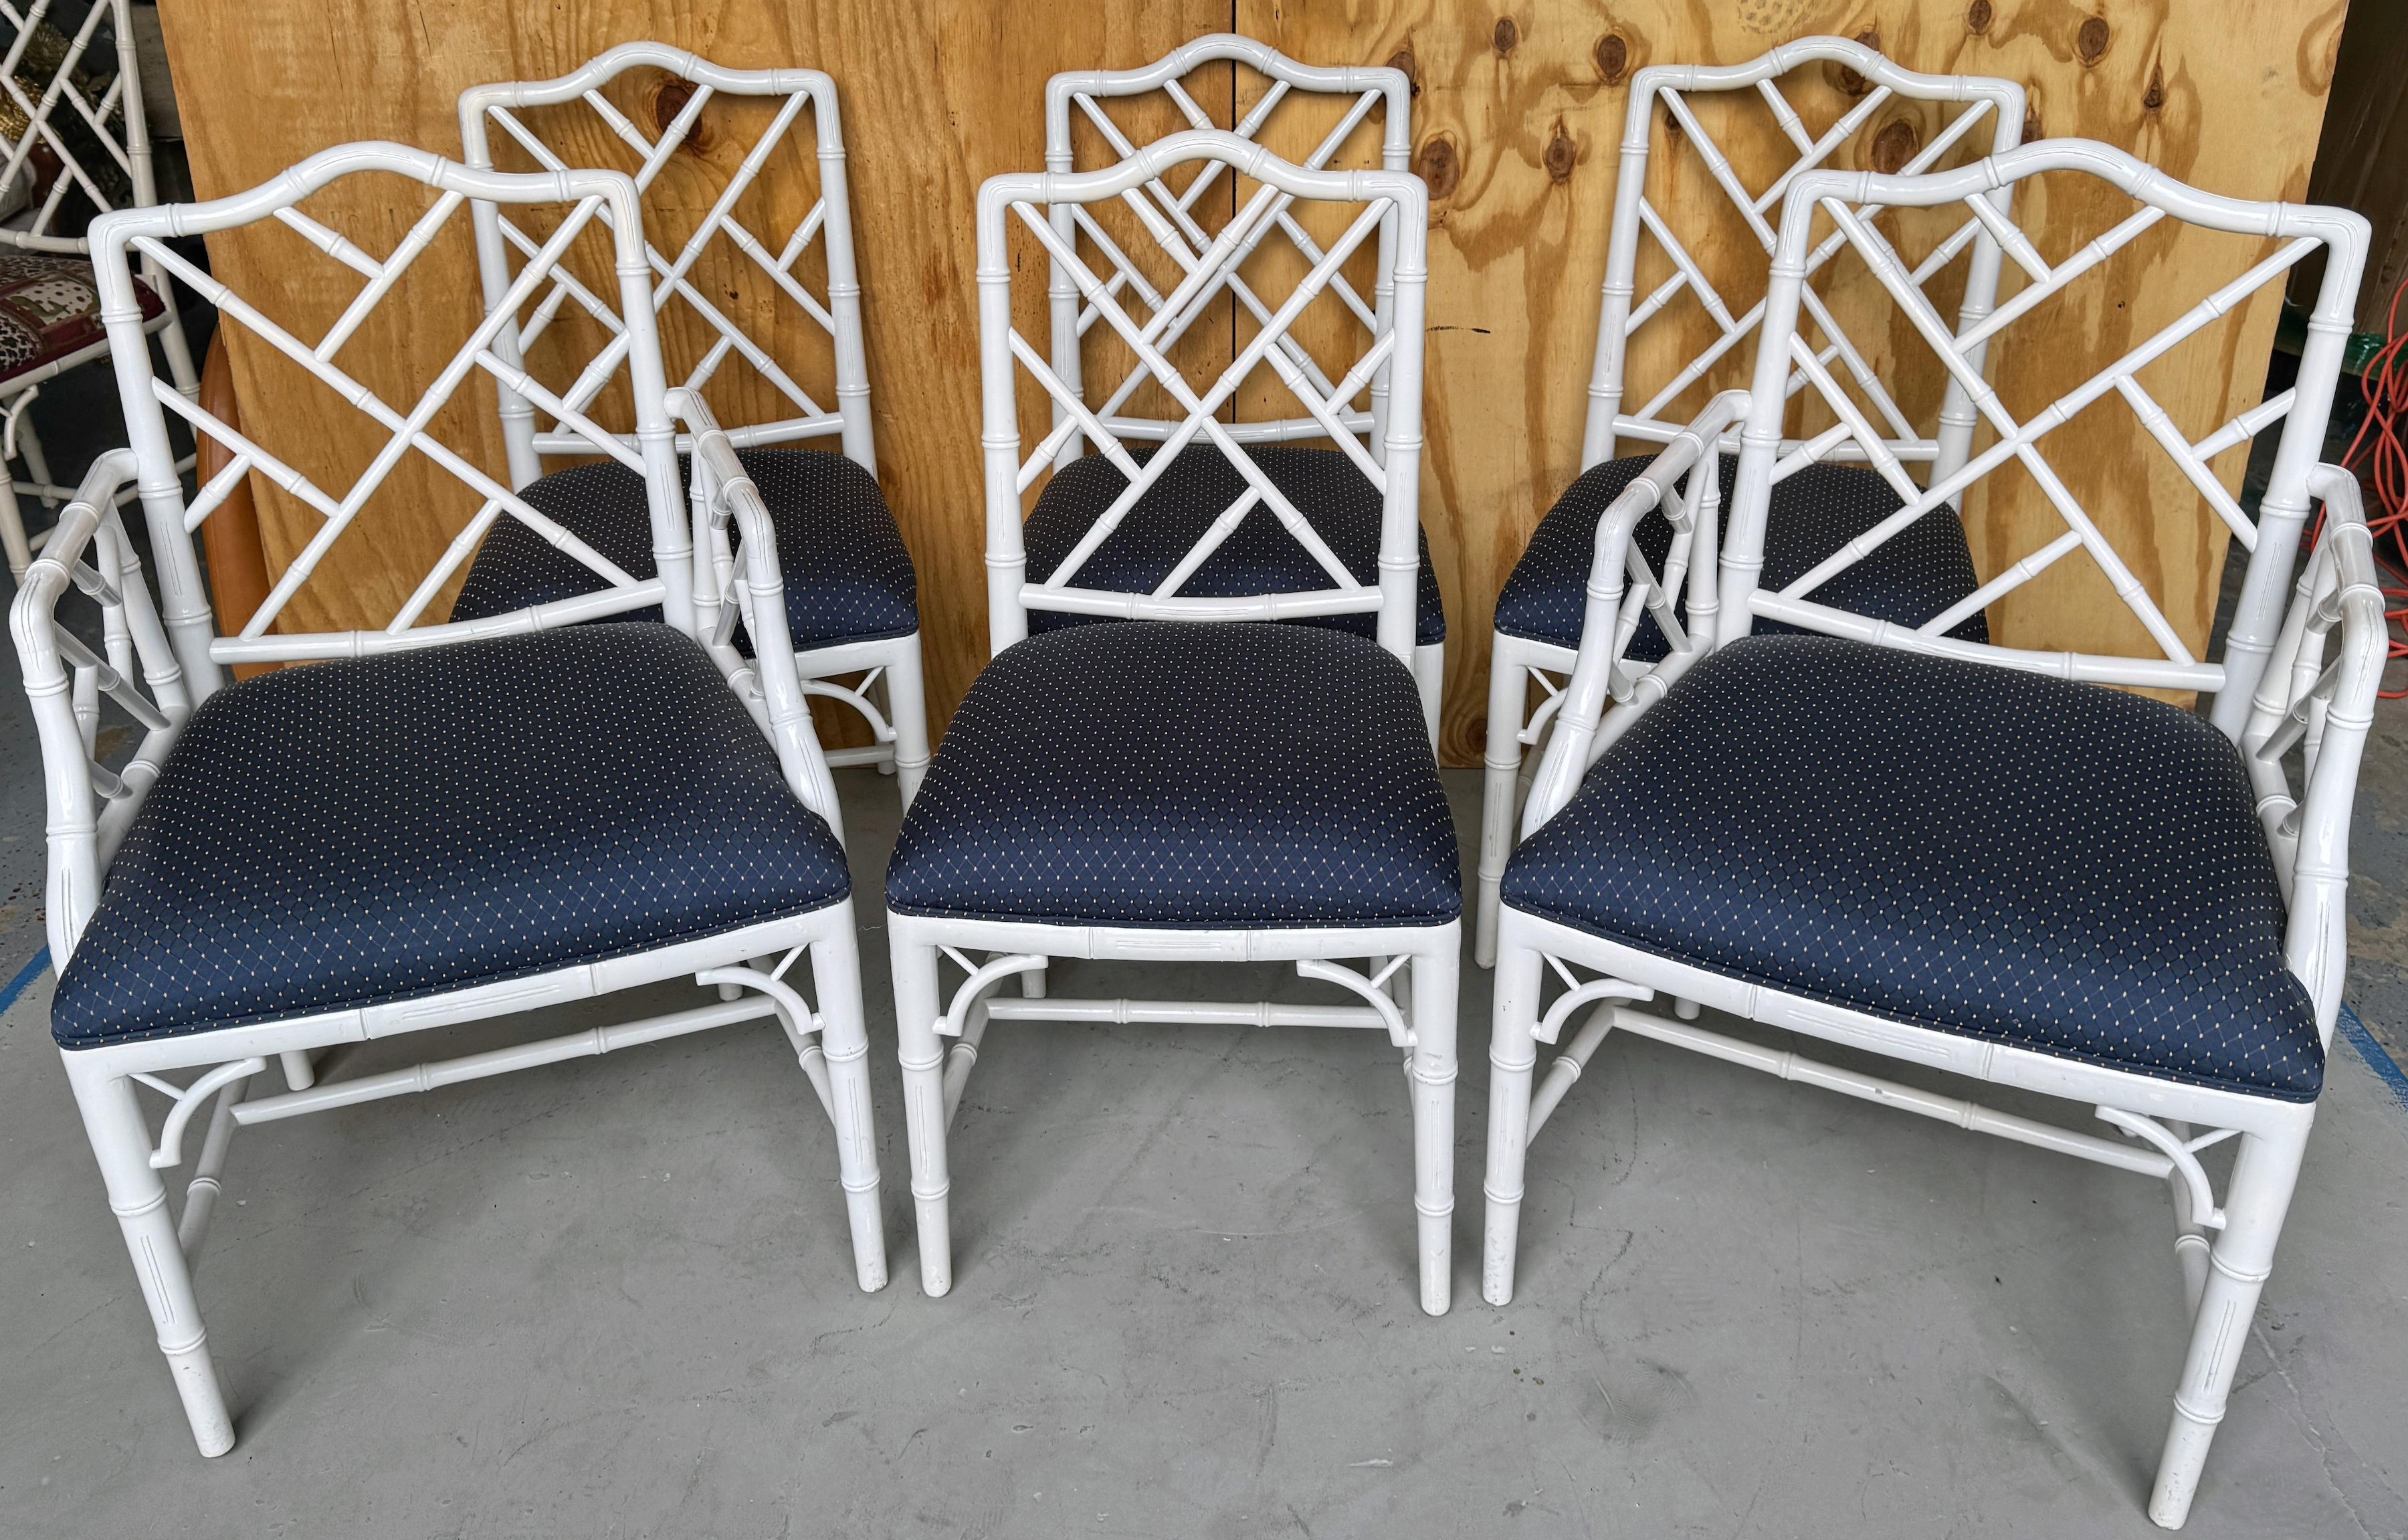 Sechs Hollywood Regency Weiß lackiert Faux Bambus Esszimmer Stühle /Frames 
USA, ca. 1960er Jahre
Ein außergewöhnlicher Satz von sechs weiß lackierten Hollywood-Regency-Stühlen aus Bambusimitat aus den 1960er-Jahren für das Esszimmer. Jeder Stuhl